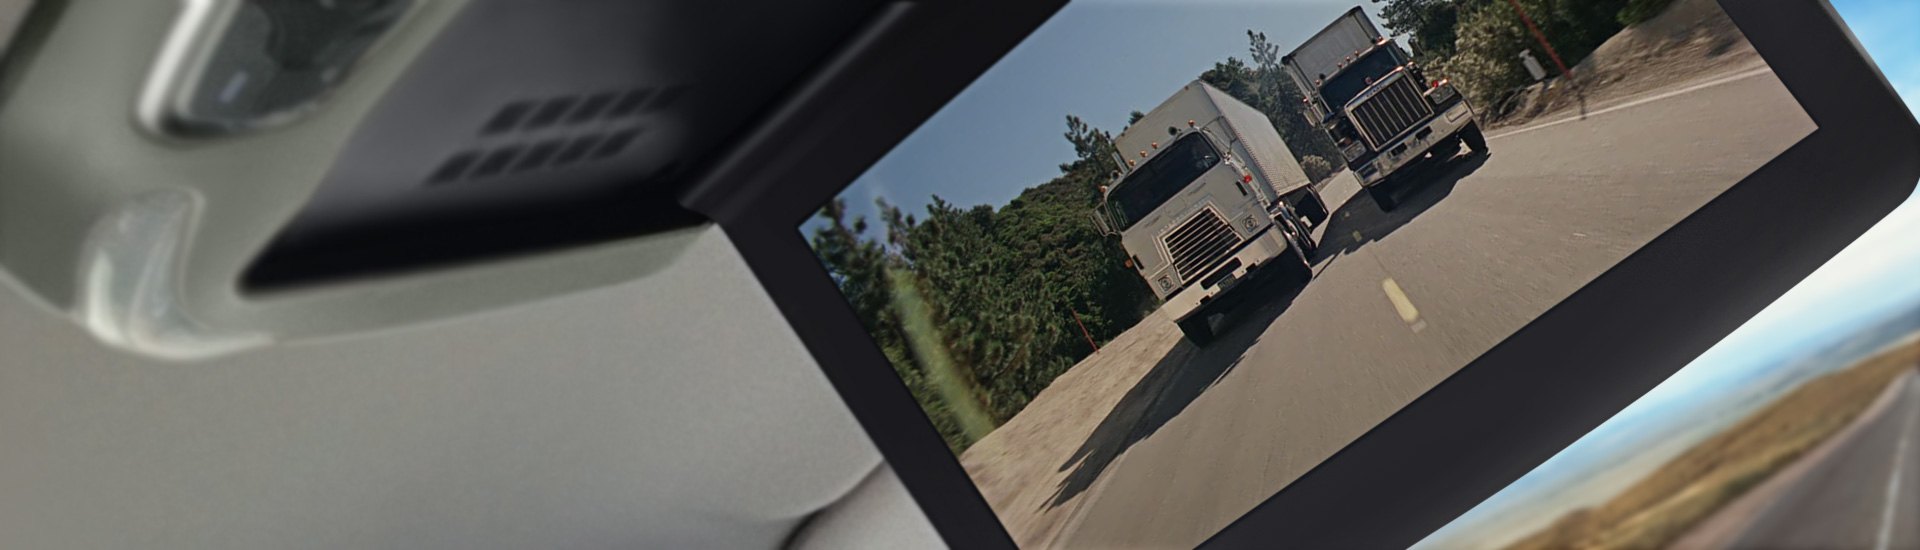 Semi Truck Videos